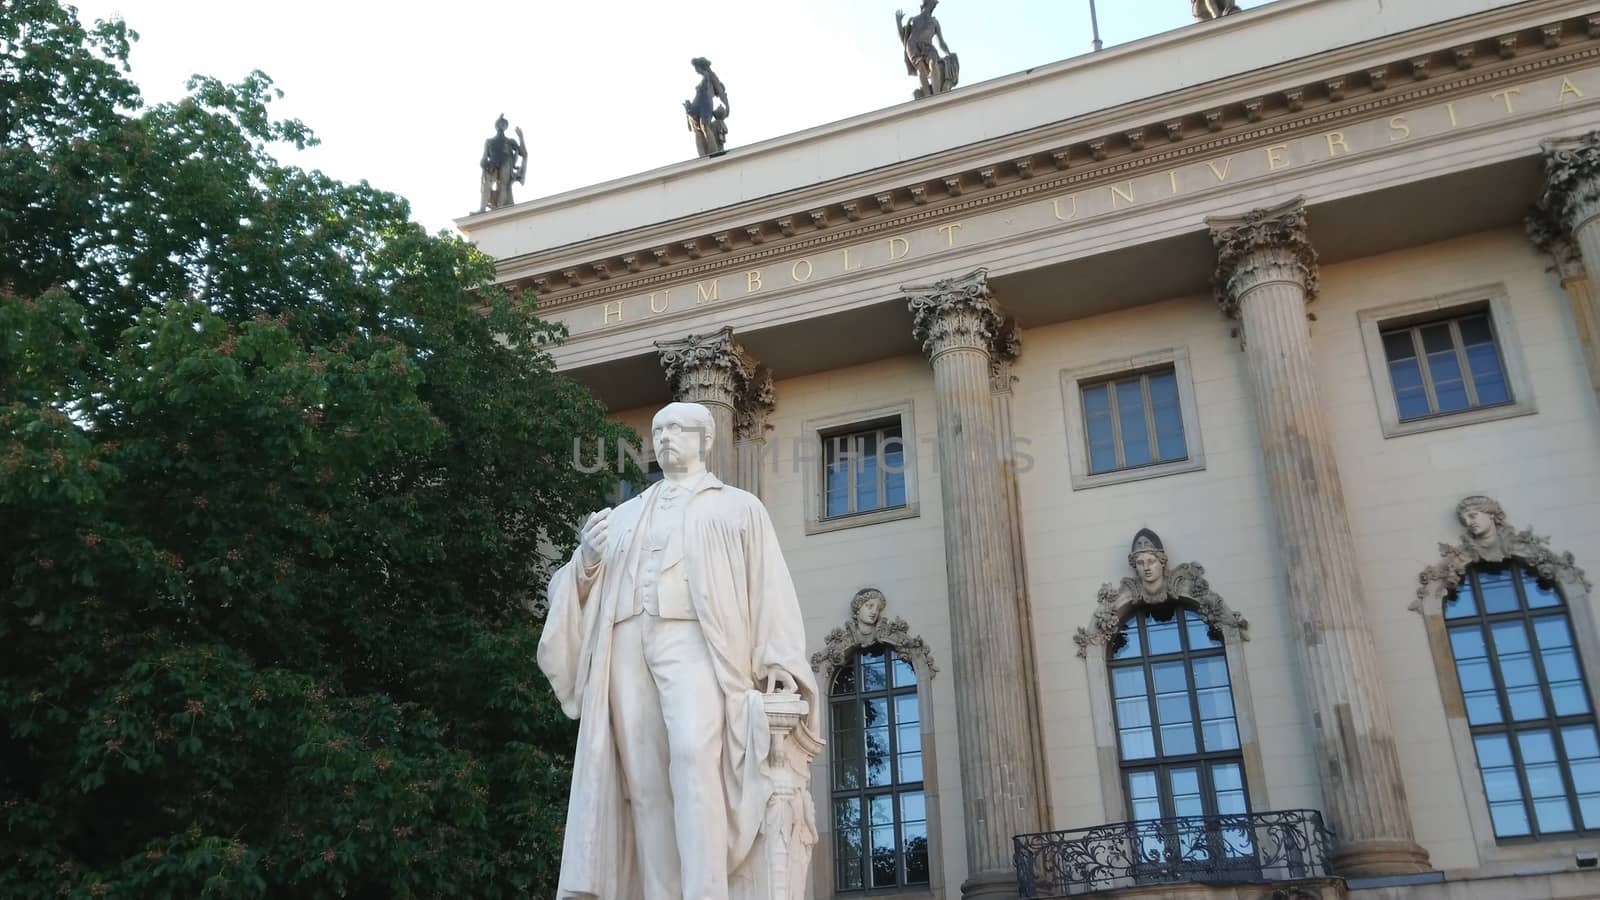 Famous Humboldt University in Berlin by Lattwein